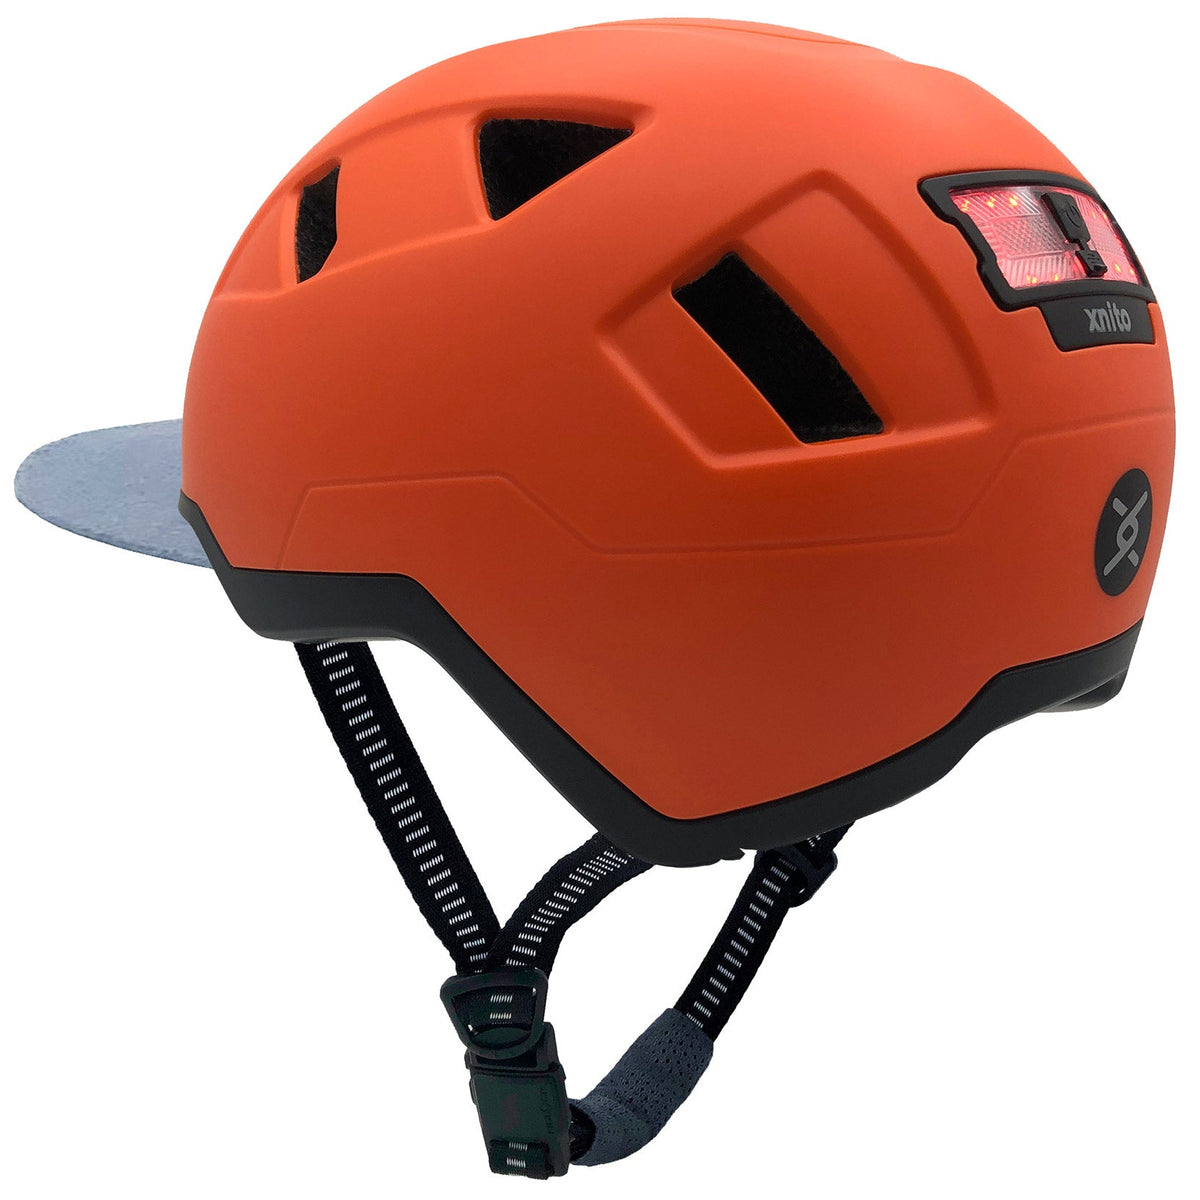 Dutch | XNITO Helmet | E-bike Helmet